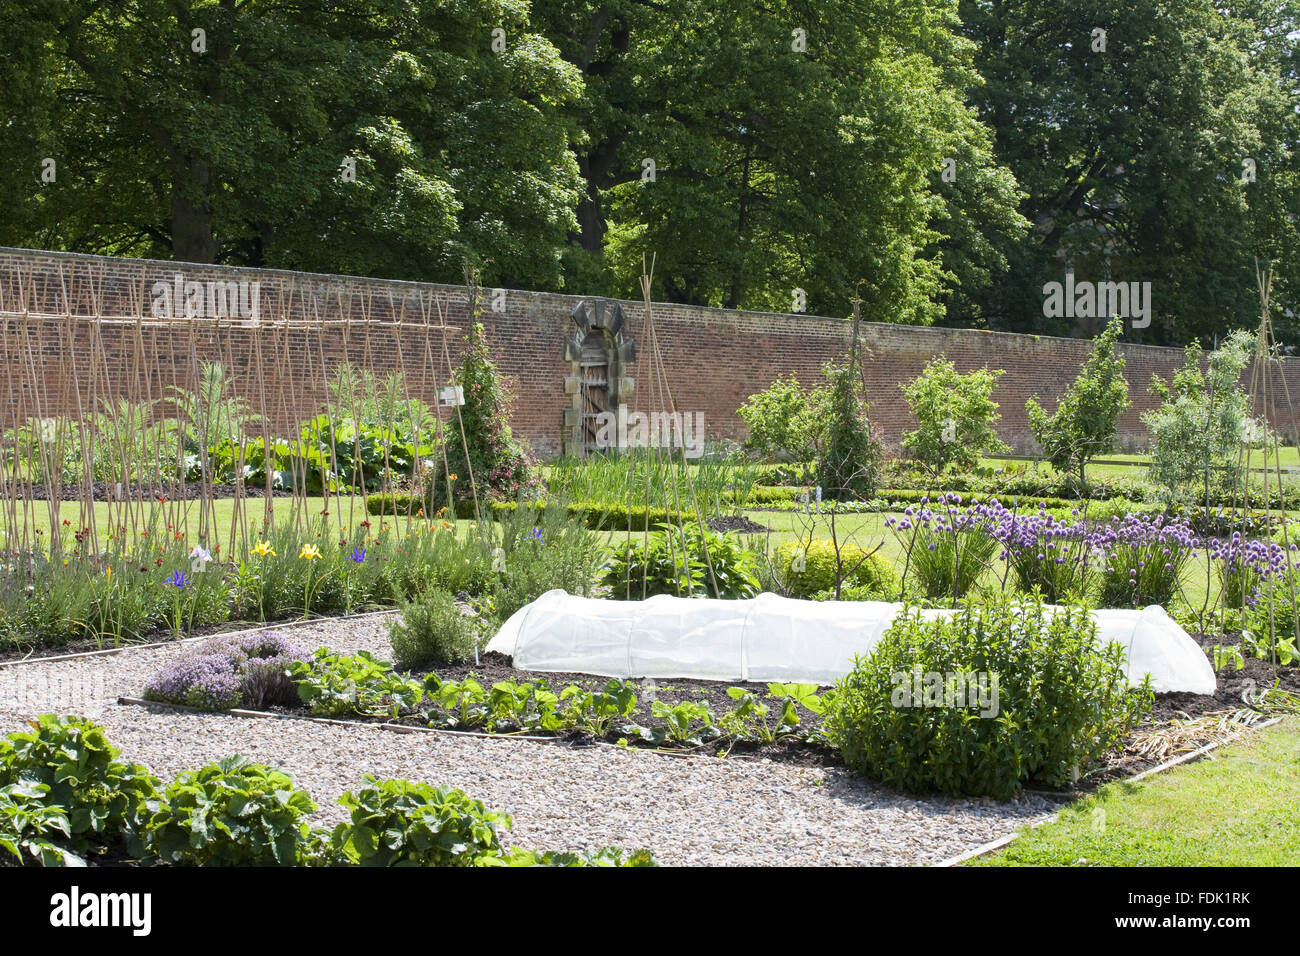 Die Walled Garden umfasst 4 Hektar auf Gibside, Newcastle Upon Tyne. Gemüse wachsen organisch in den Walled Garden. Stockfoto